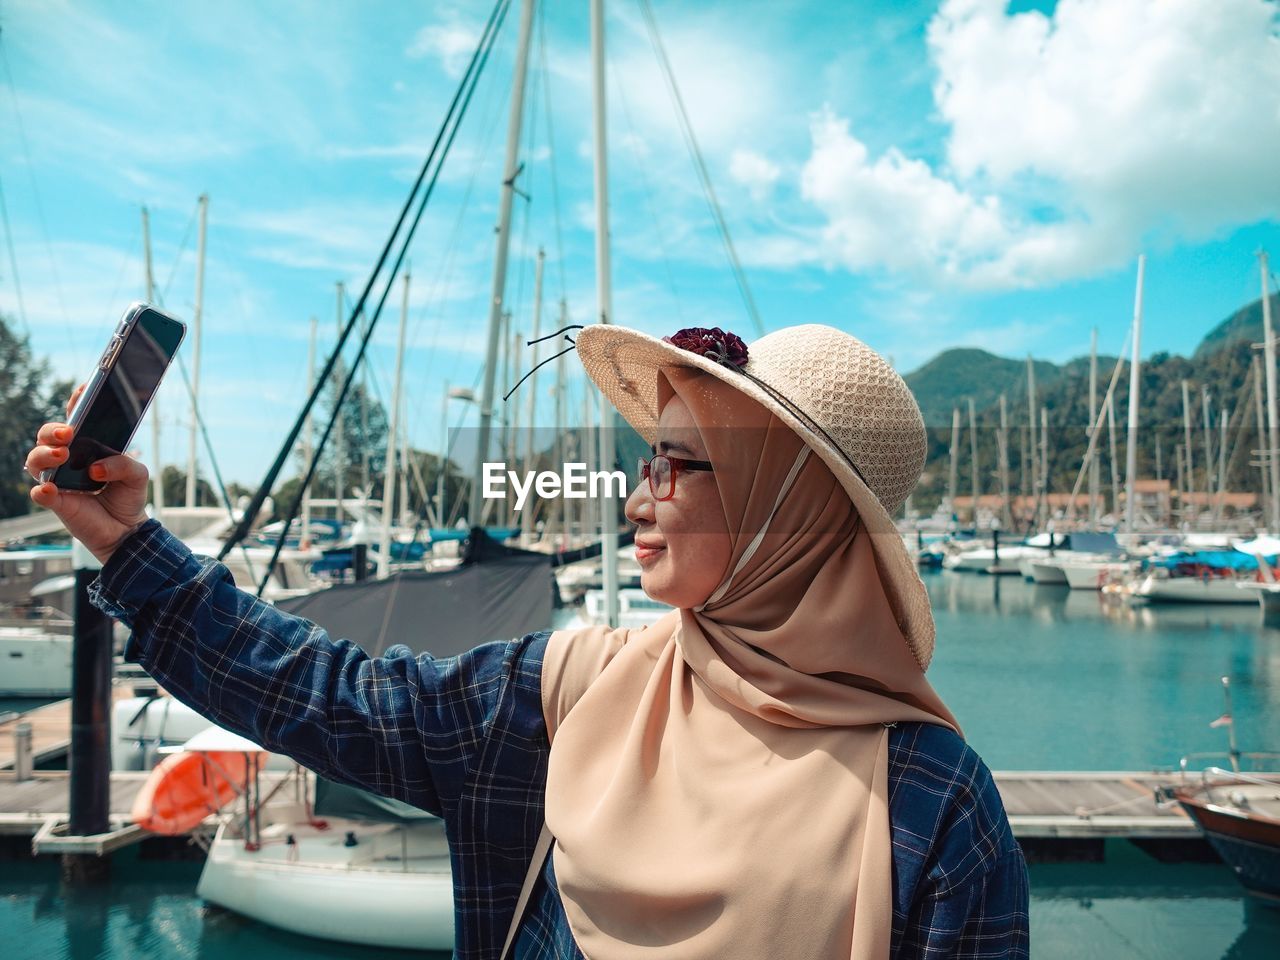 Woman wearing hijab taking selfie at harbor